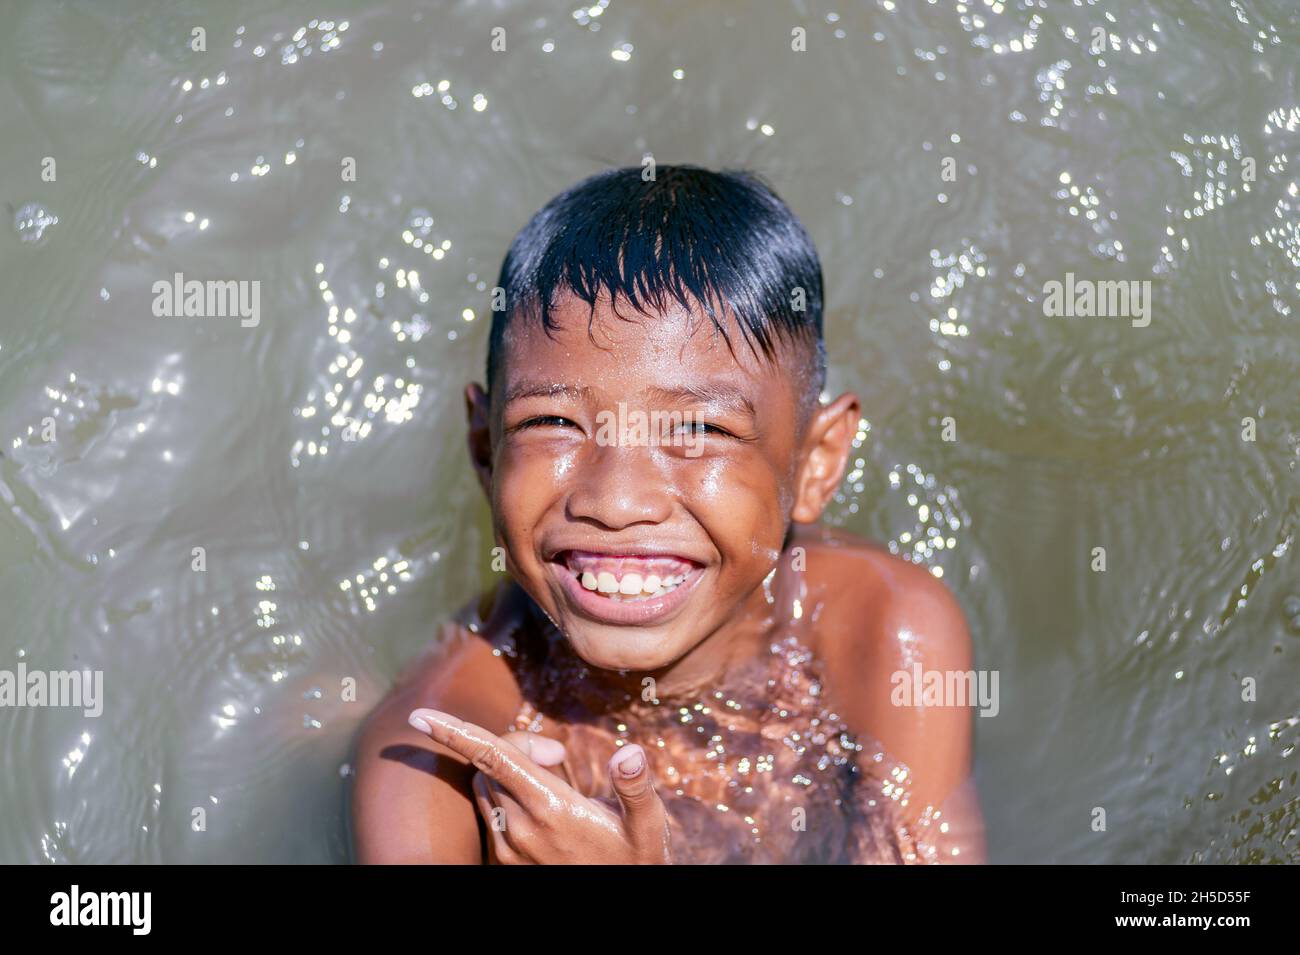 Der Junge am Muara Kali Pier lächelt glücklich, wenn er fotografiert werden soll Stockfoto